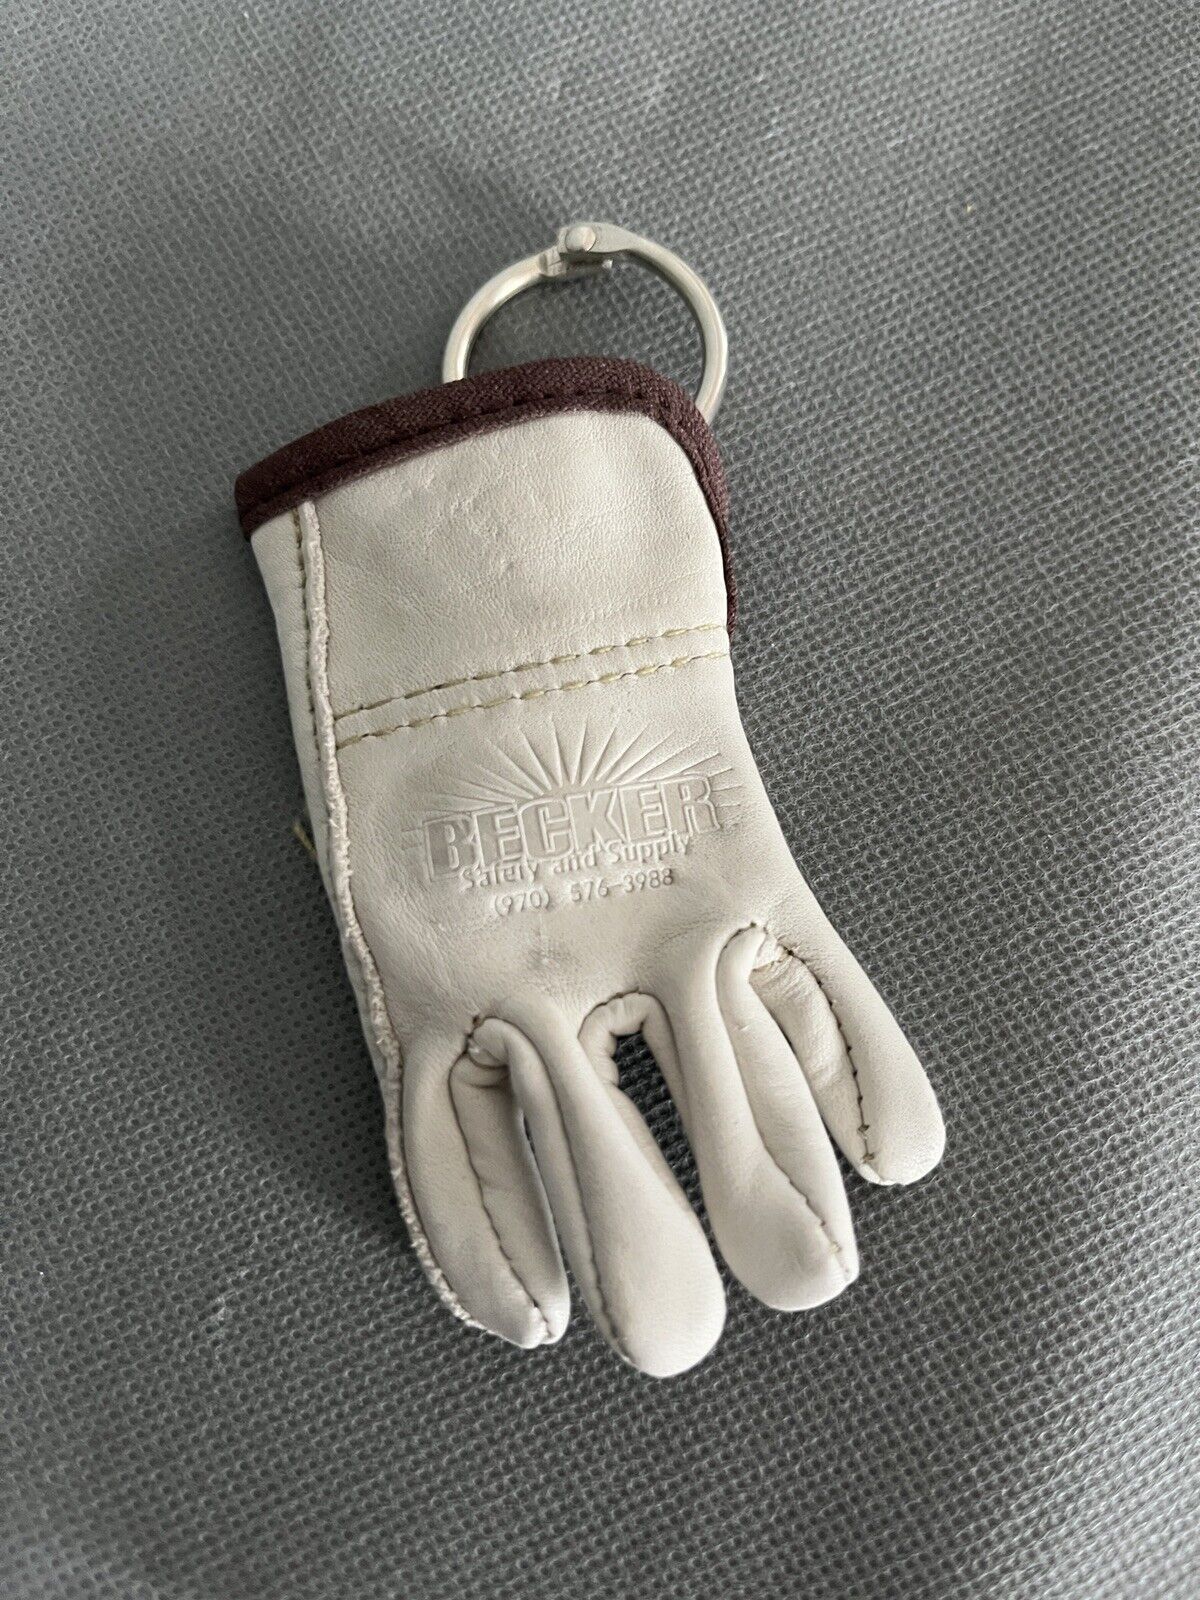 Vintage Miniature Becker Work Glove Keychain Leather